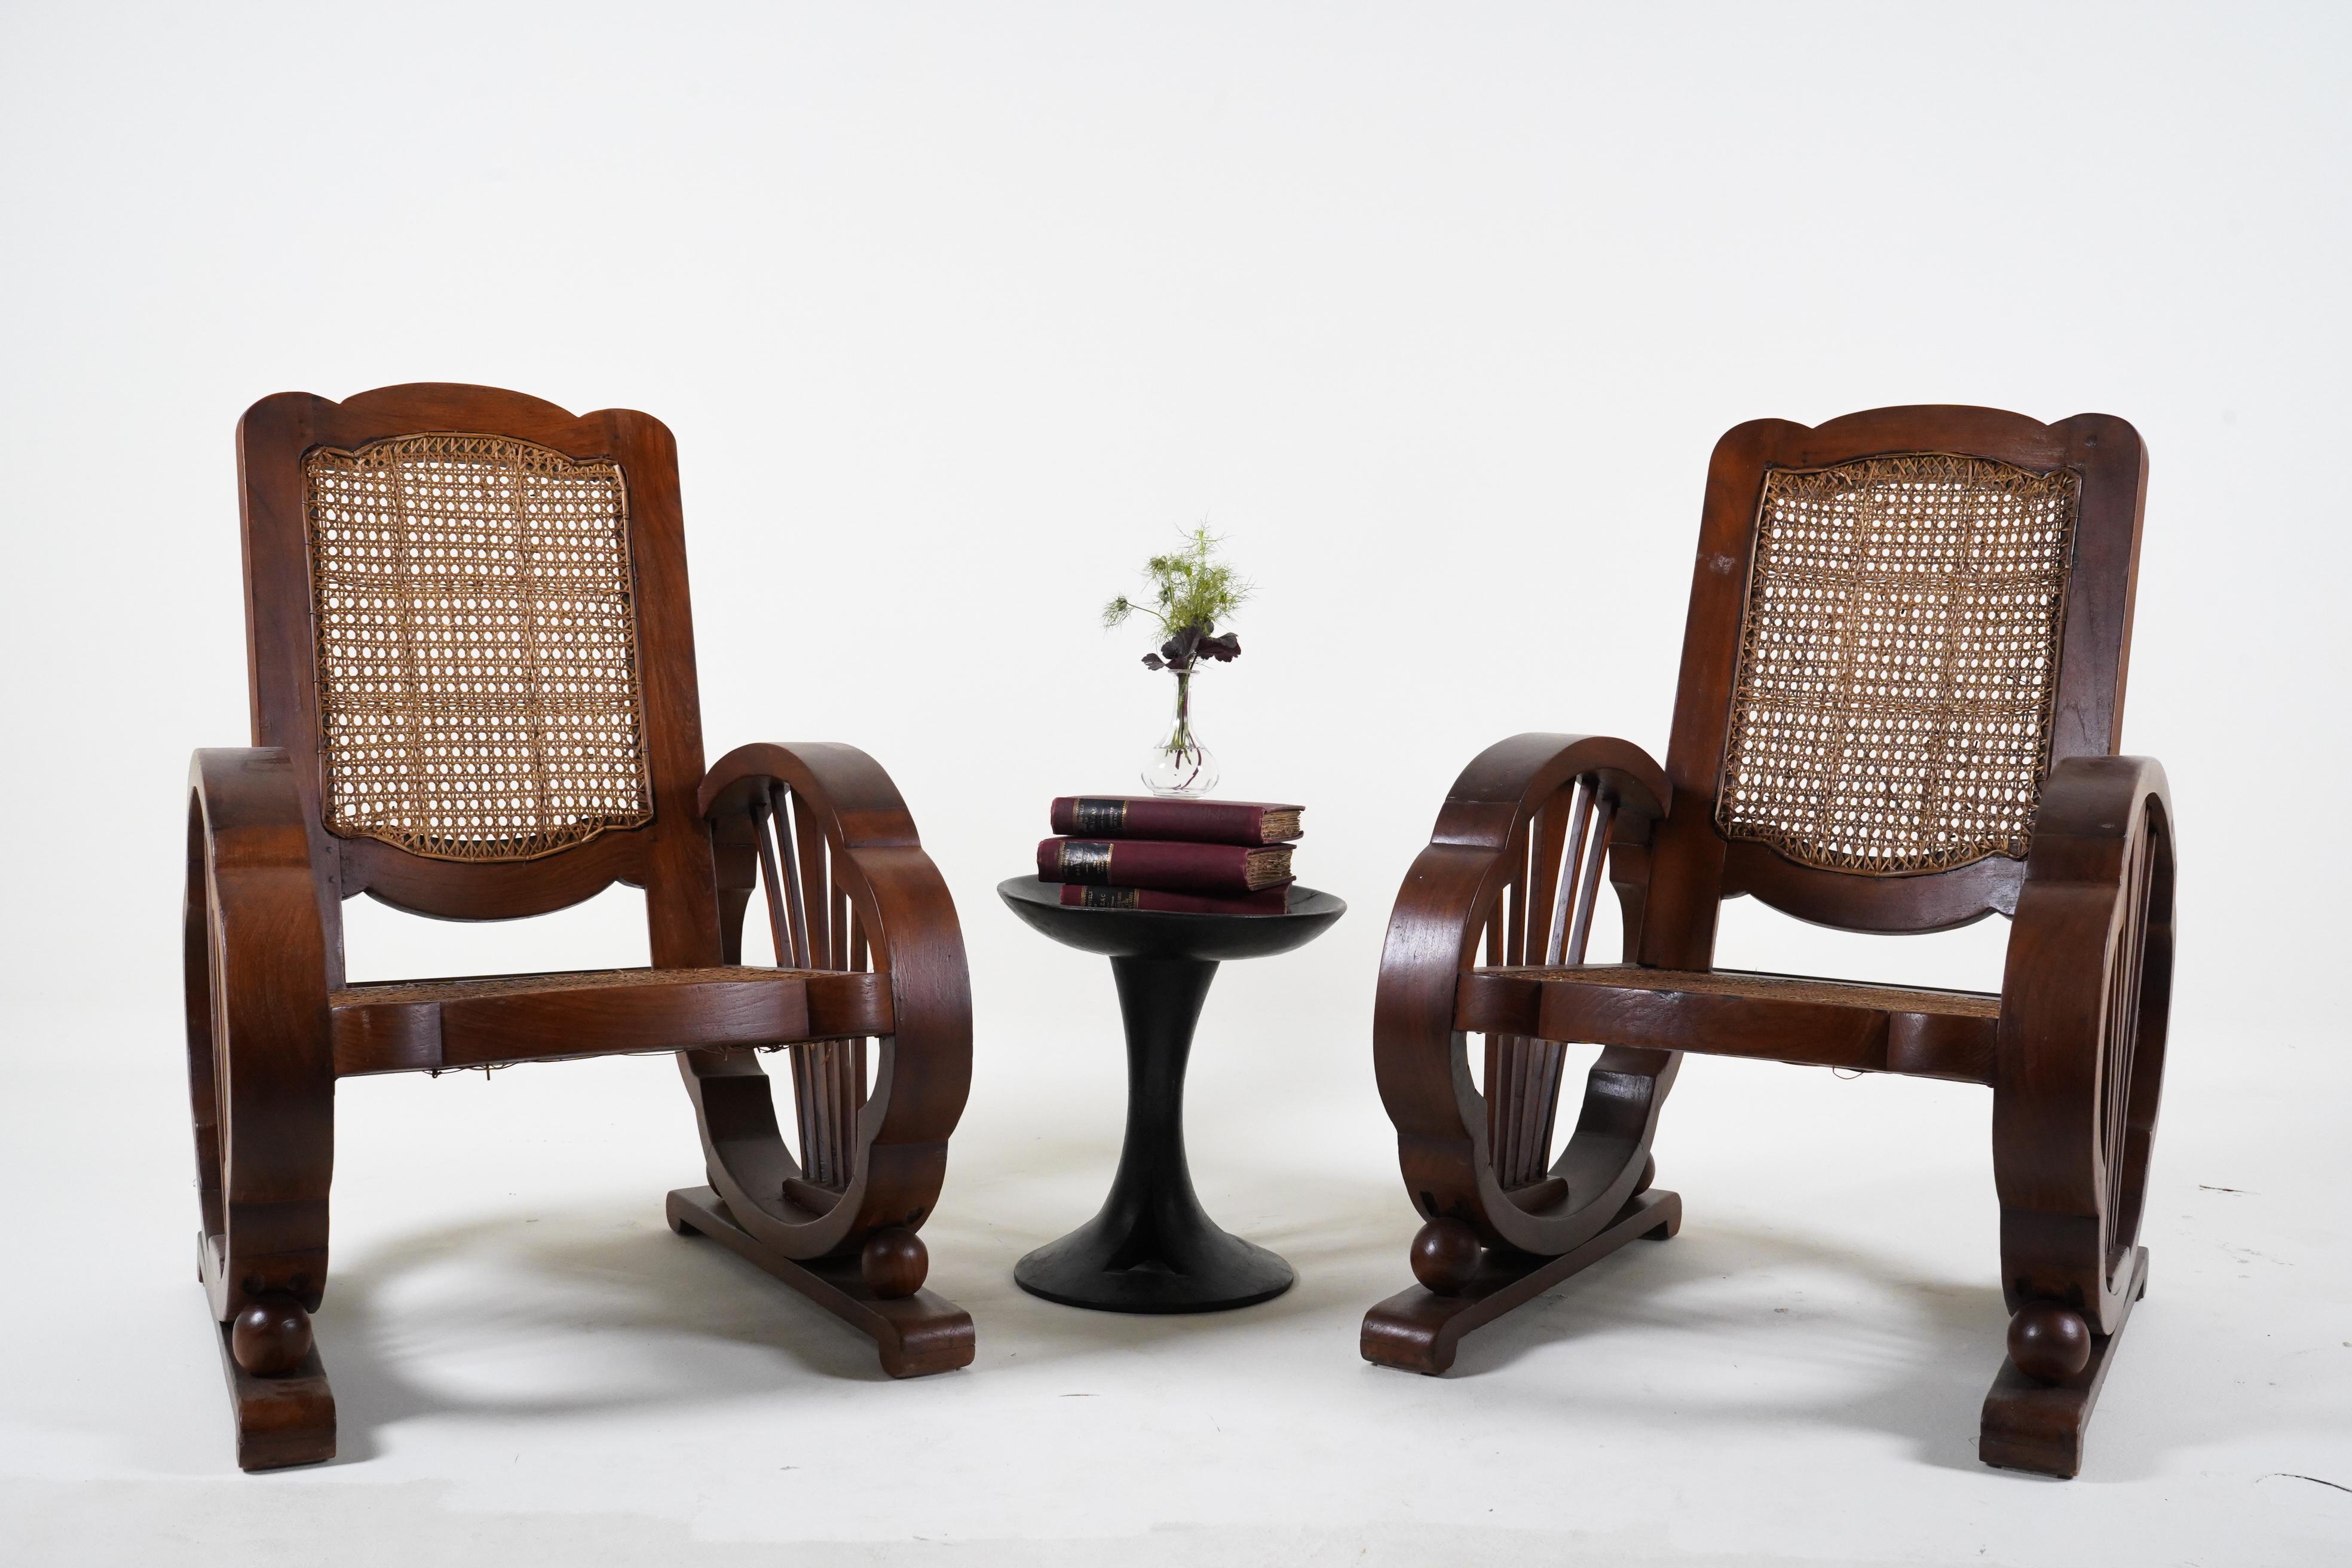 Ces chaises longues élégantes datent des années 1920 et ont été fabriquées à Rangoon, en Birmanie. Pendant la période coloniale britannique, une grande partie du mobilier indien a été fabriquée selon des styles britanniques ou européens. Des bois